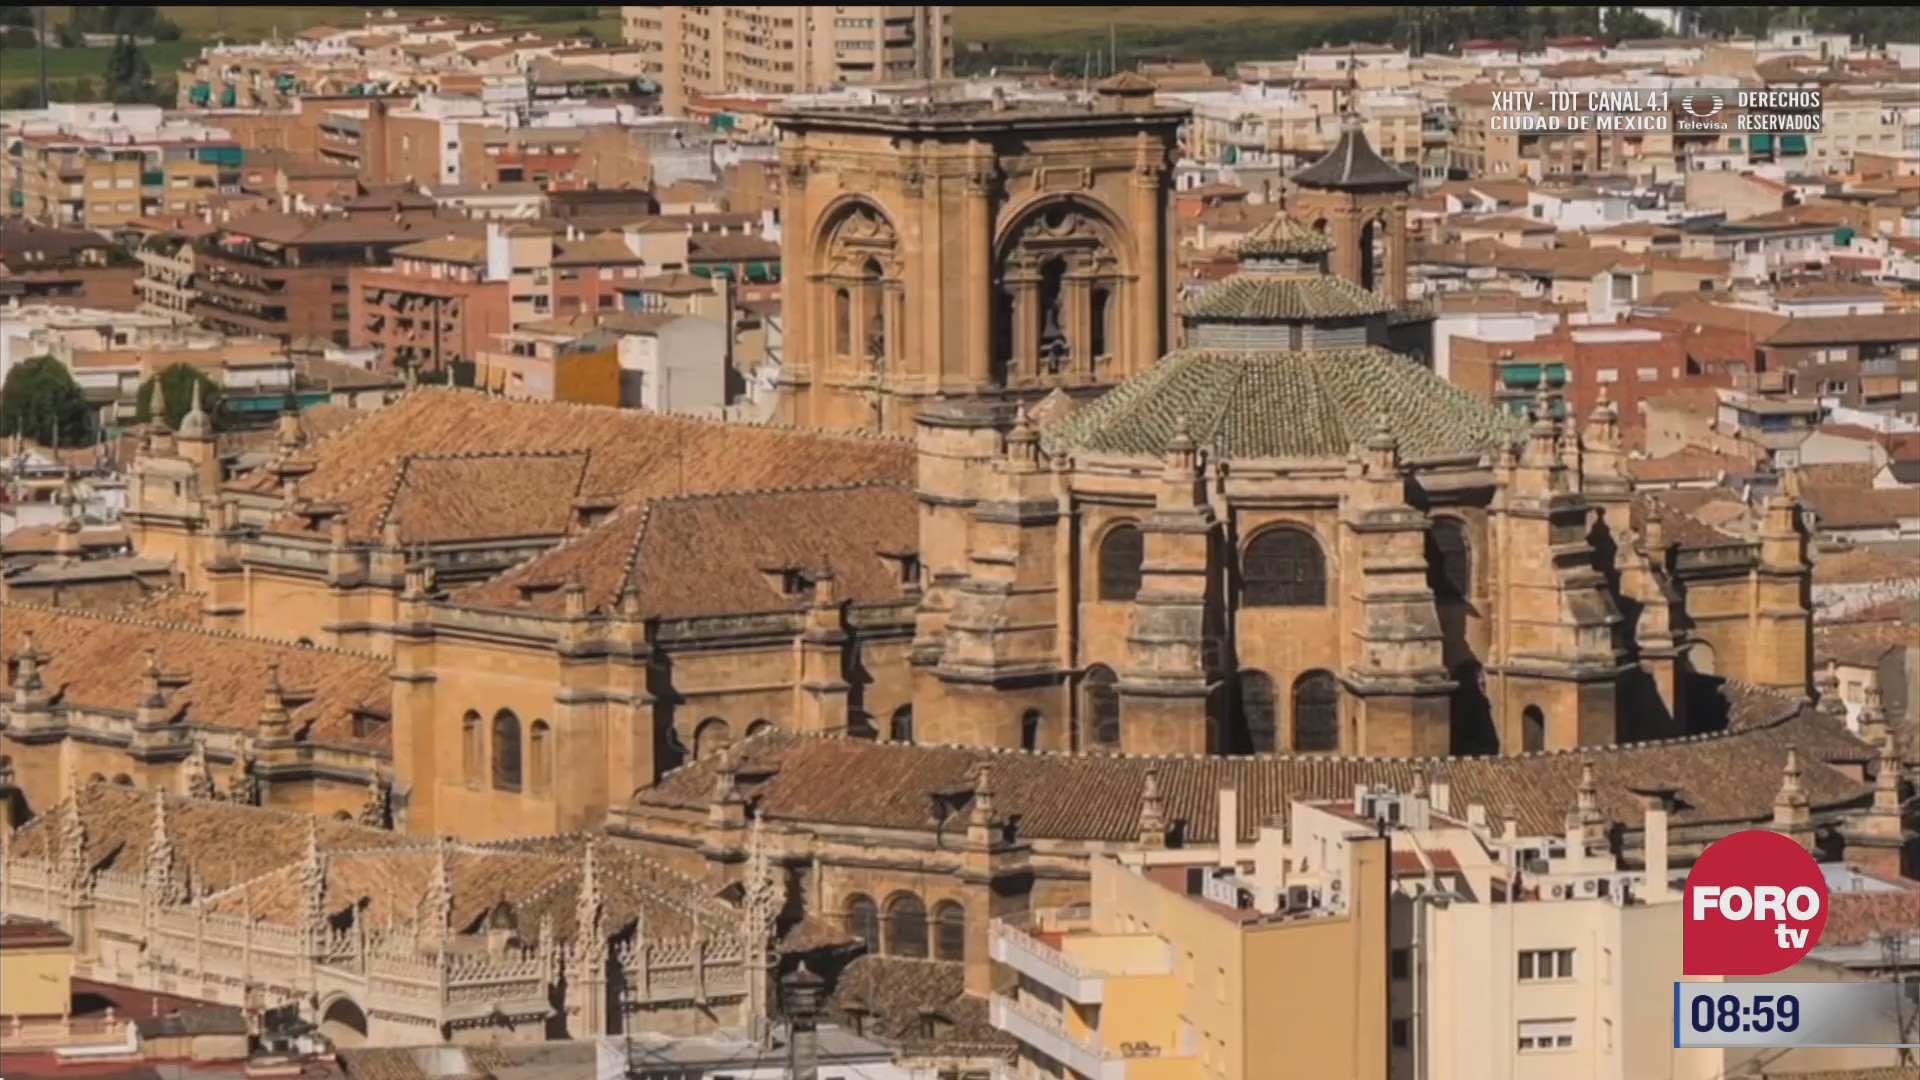 catedrales del mundo catedral de granada espana